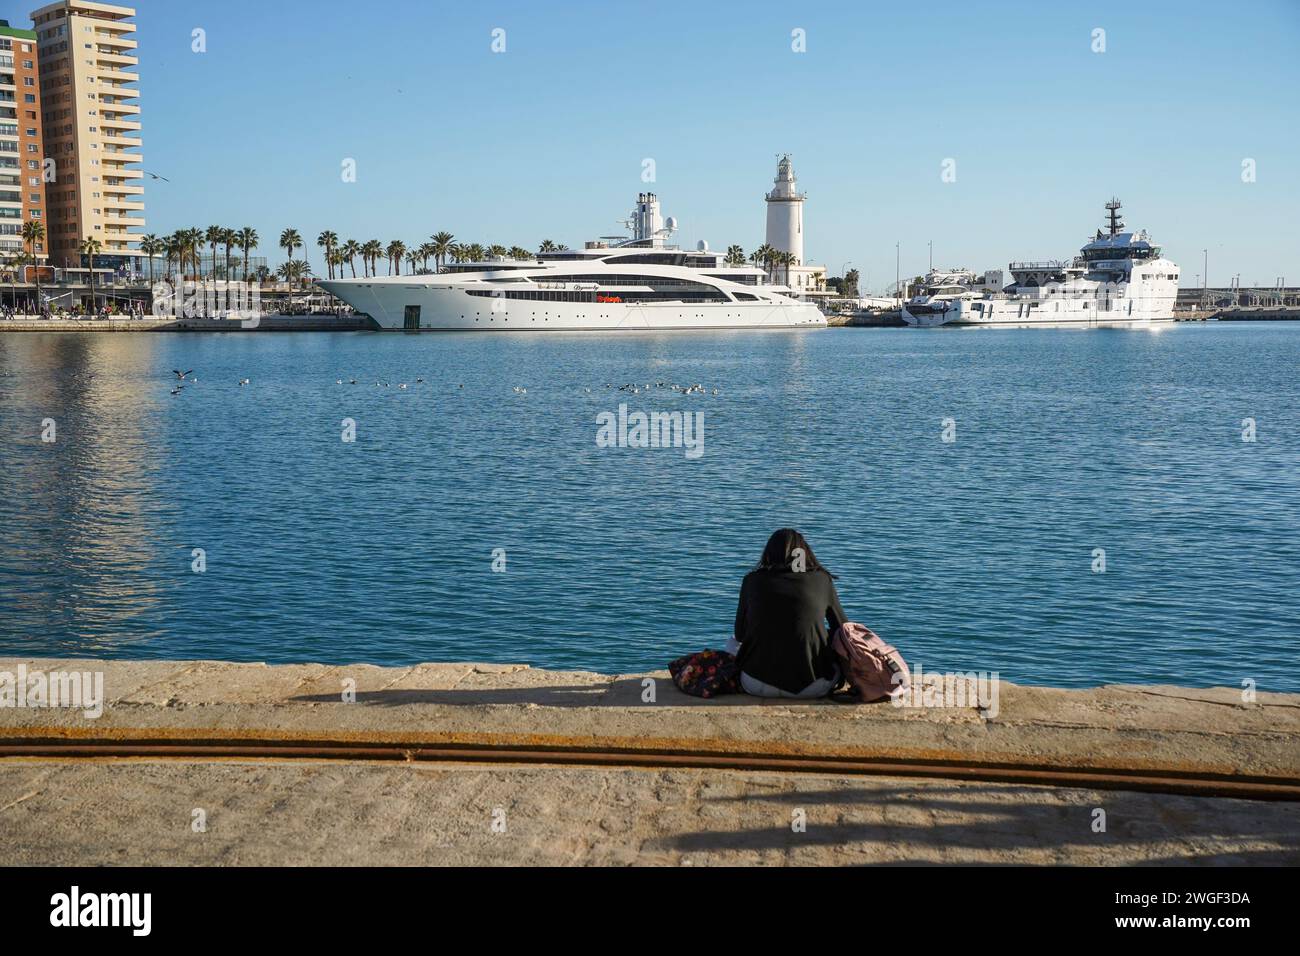 Une fille est assise devant Megayacht, super yacht, dynastie hivernage dans le port de Malaga, Costa del sol, Espagne. Banque D'Images